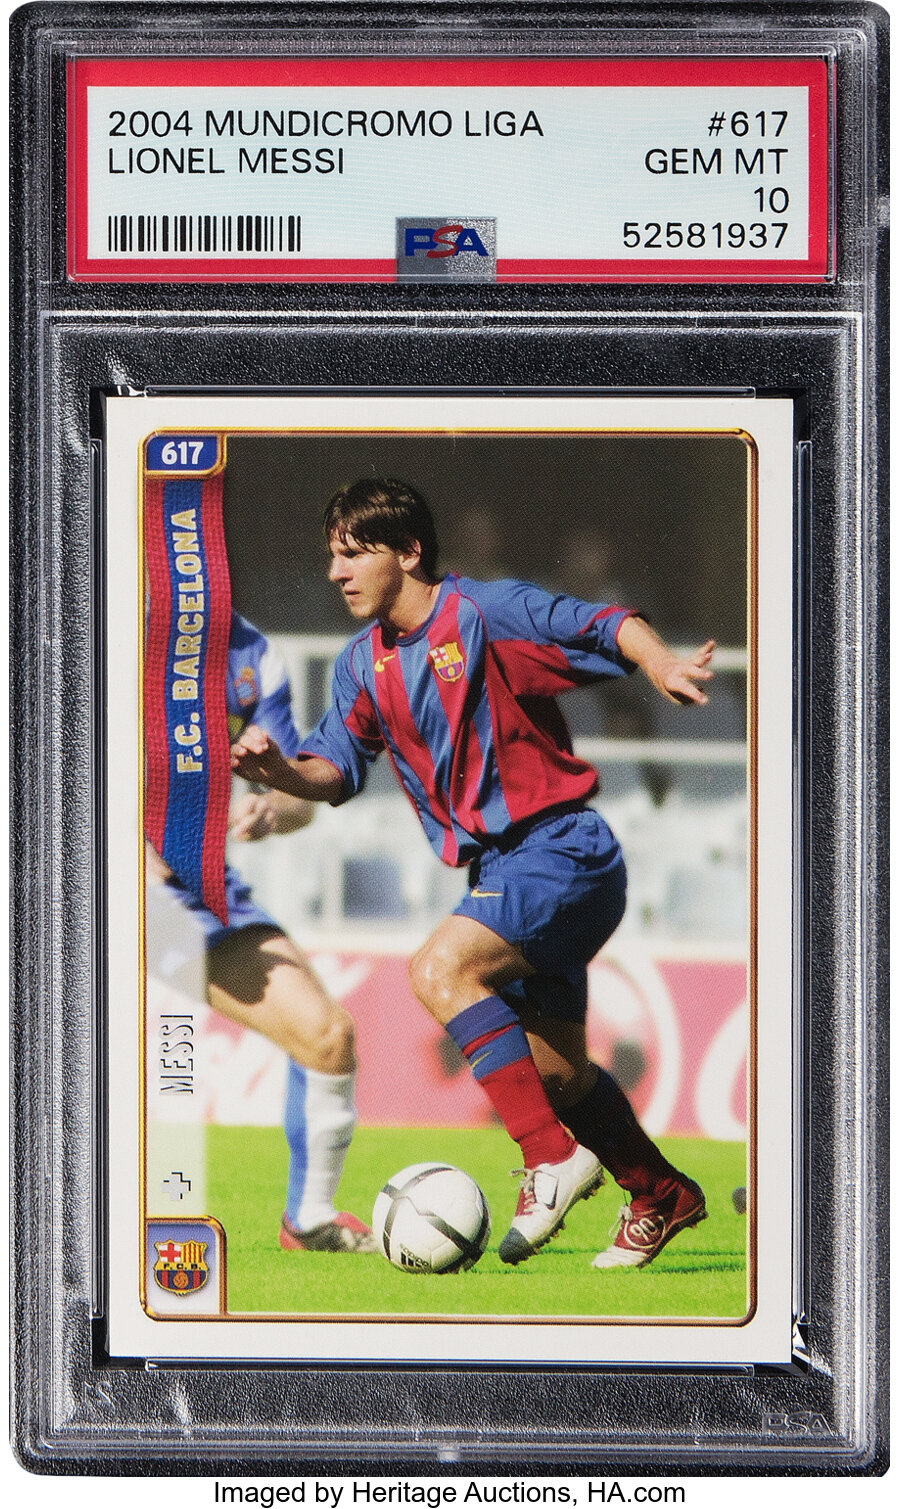 2004 Mundicromo Liga Lionel Messi Rookie #617 PSA Gem Mint 10